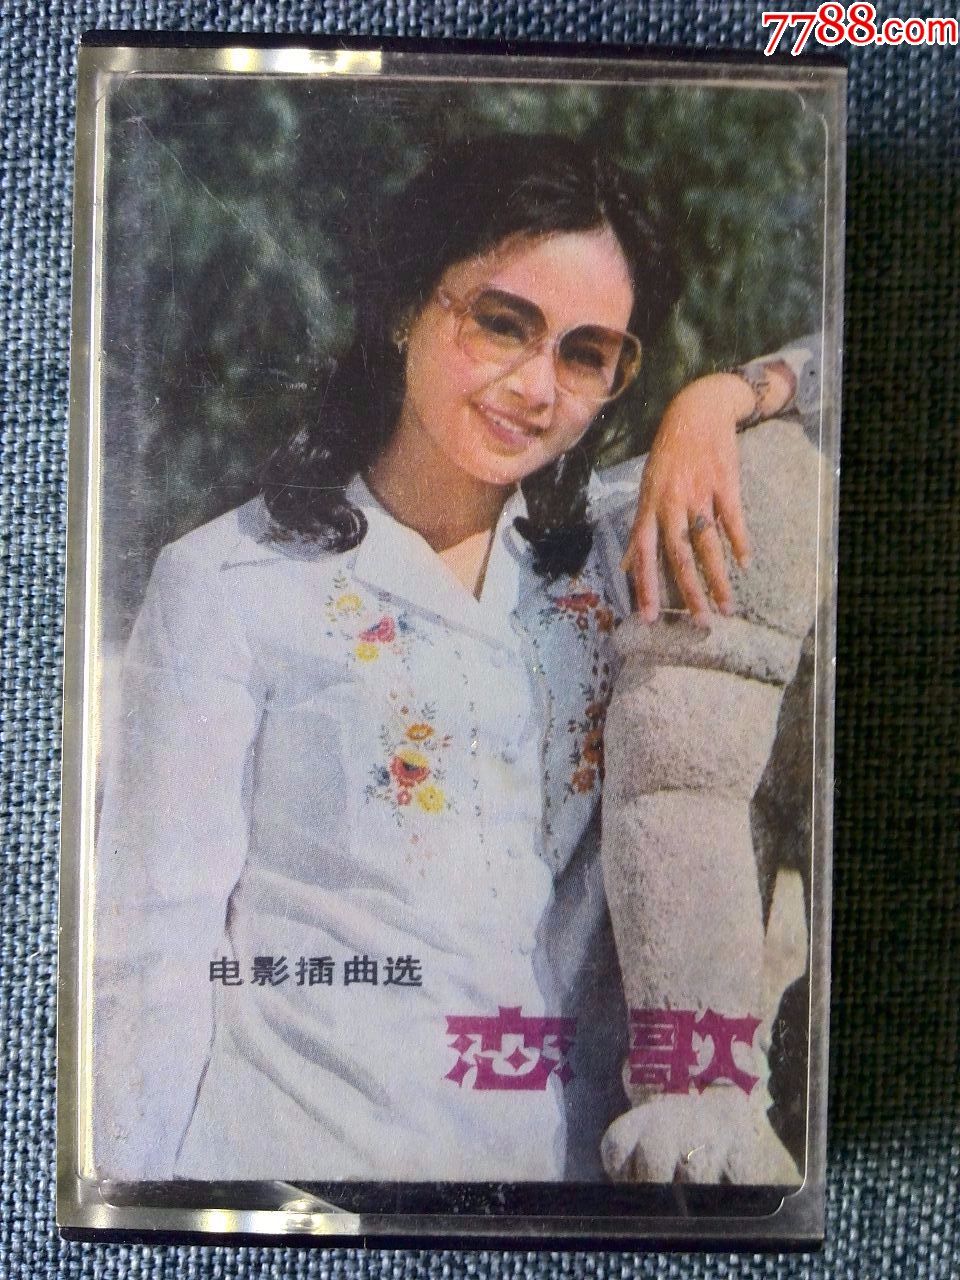 少见,大陆八十年代电影歌曲专辑《恋歌》中国